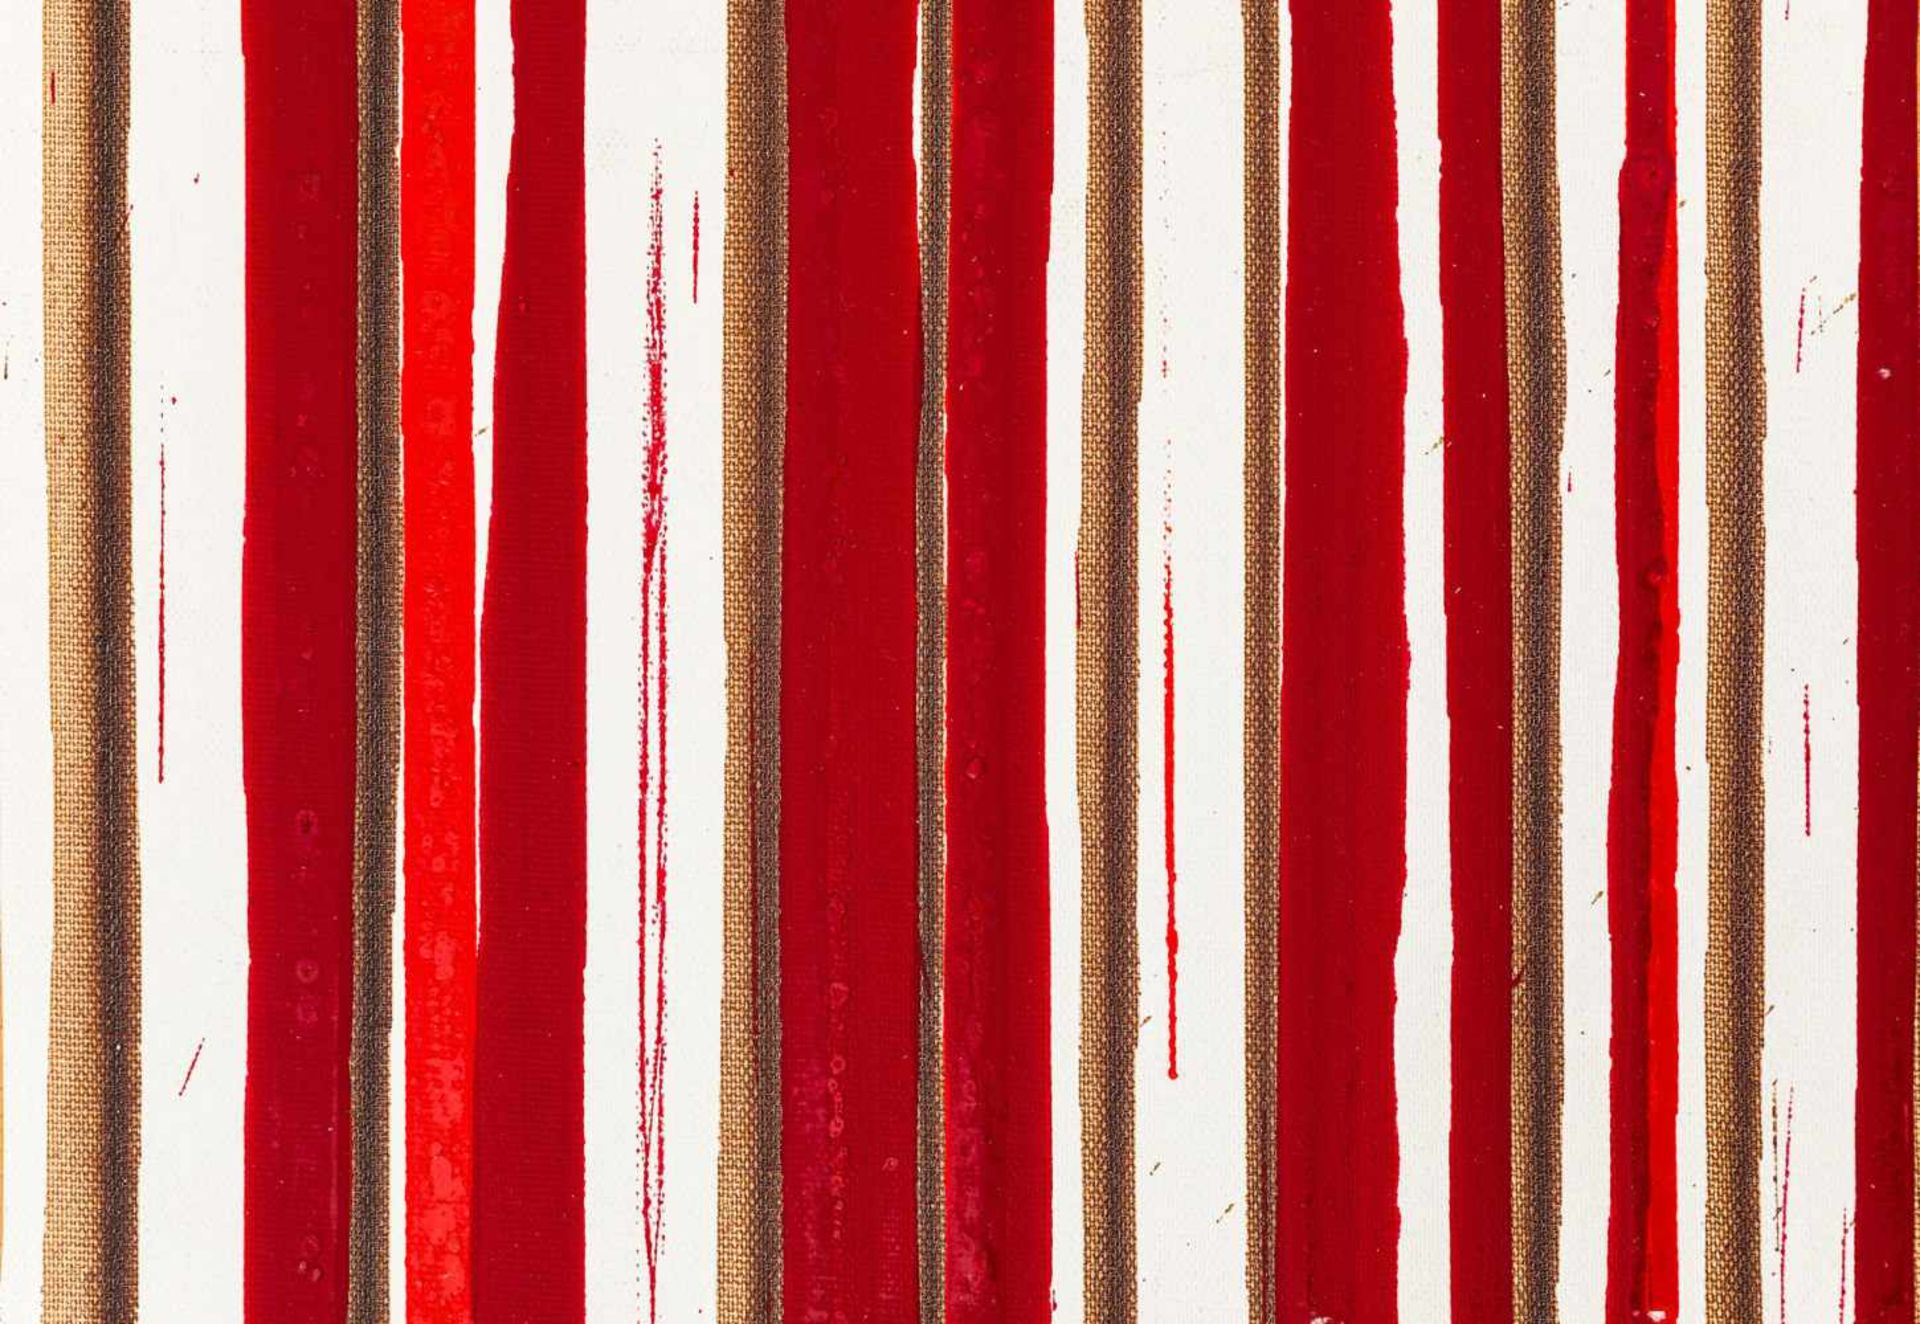 Hermann Nitsch Wien 1938 geb. Ohne Titel (Schüttbild) Acryl, (Blut) auf Leinwand 20 x 28 cm 2014